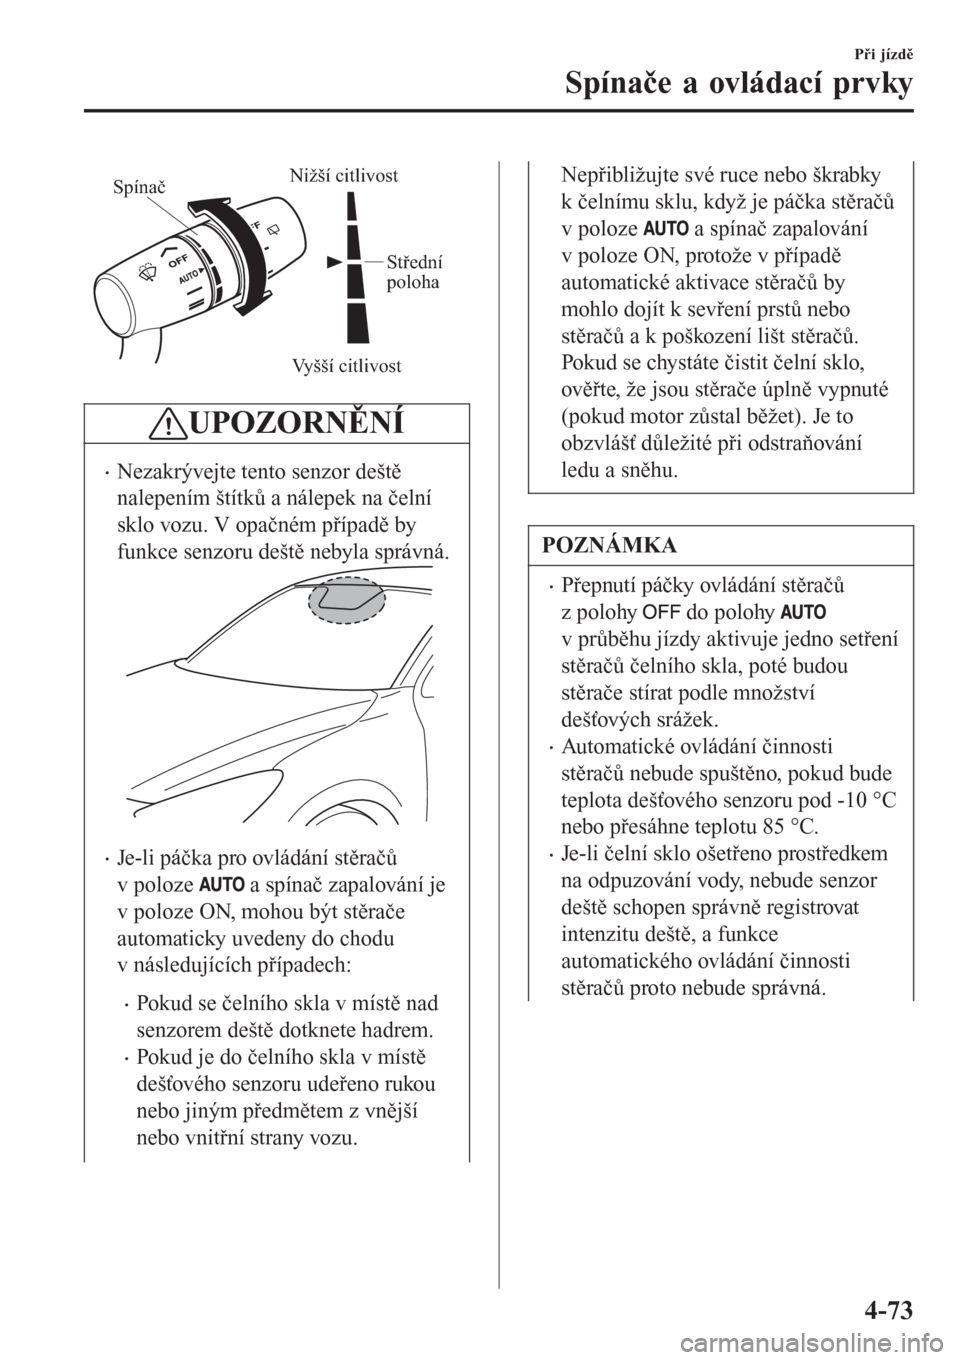 MAZDA MODEL CX-3 2016  Návod k obsluze (in Czech) Vyšší citlivost
Nižší citlivostSpínač
Střední 
poloha
UPOZORNĚNÍ
�xNezakrývejte tento senzor deště
nalepením štítků a nálepek na čelní
sklo vozu. V opačném případě by
funkce